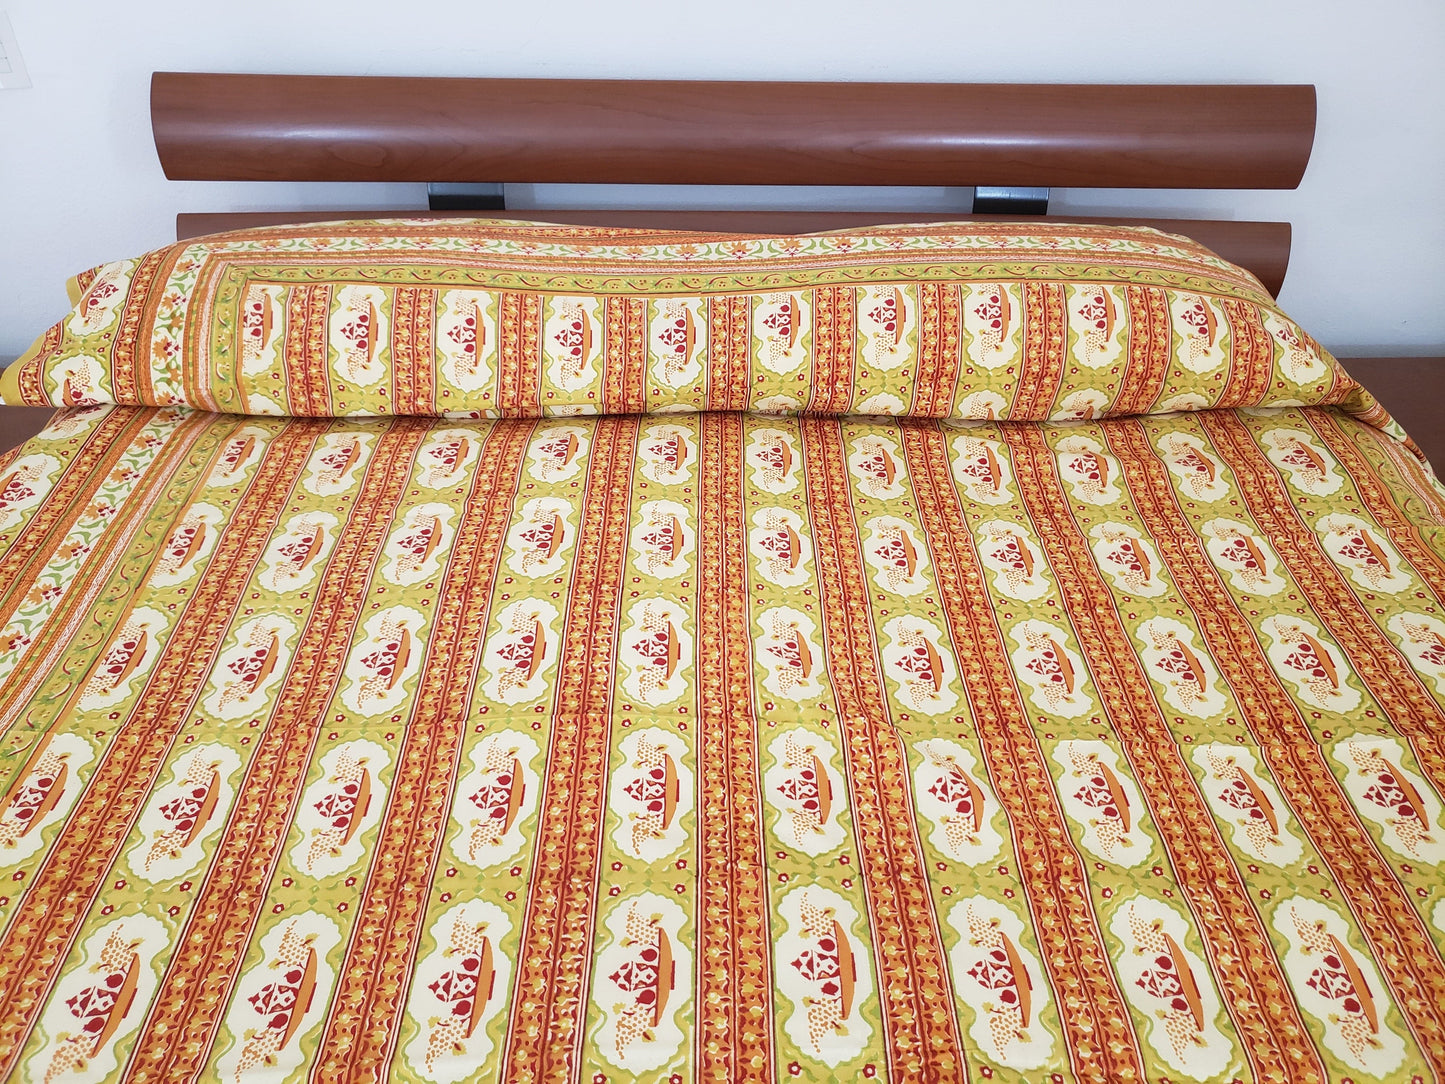 Detalle de sobrecama 100% algodón estampado a mano, base beige con diseño lineal en tonos verde, naranja y rojo. Hecho en la India.